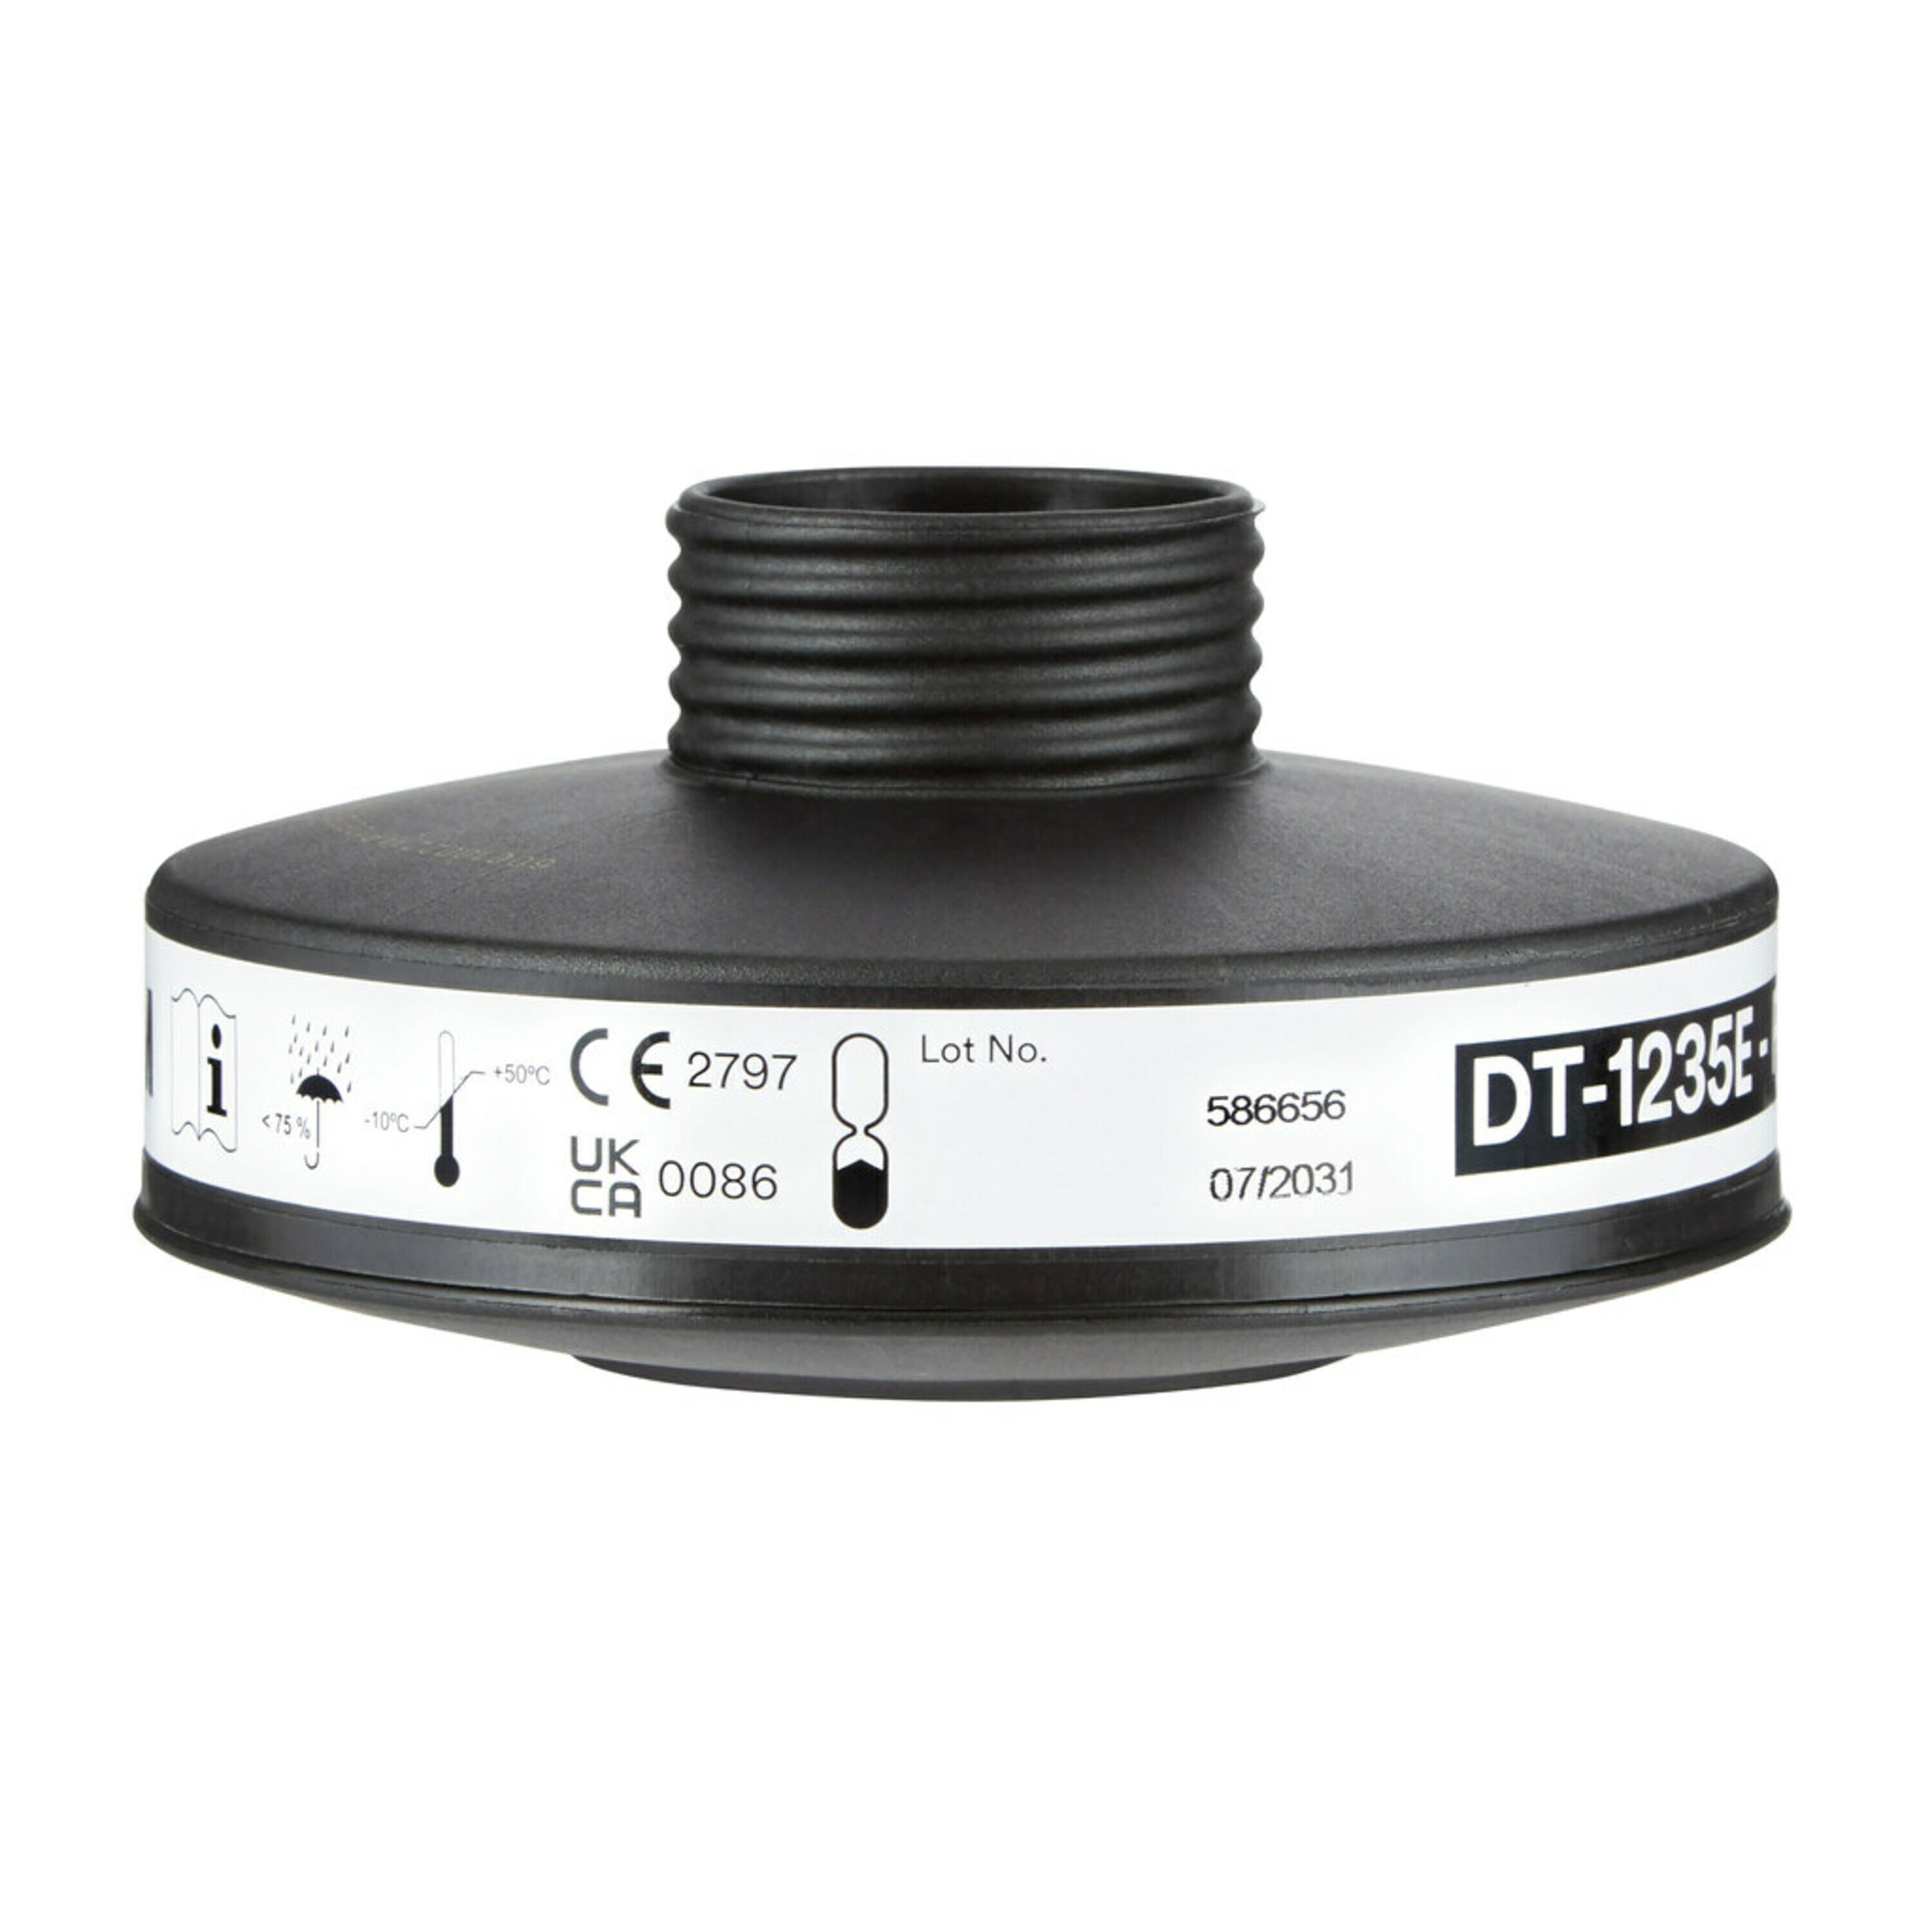 filtro antiparticolato 3M, PFR 10 P3 DT-1235E